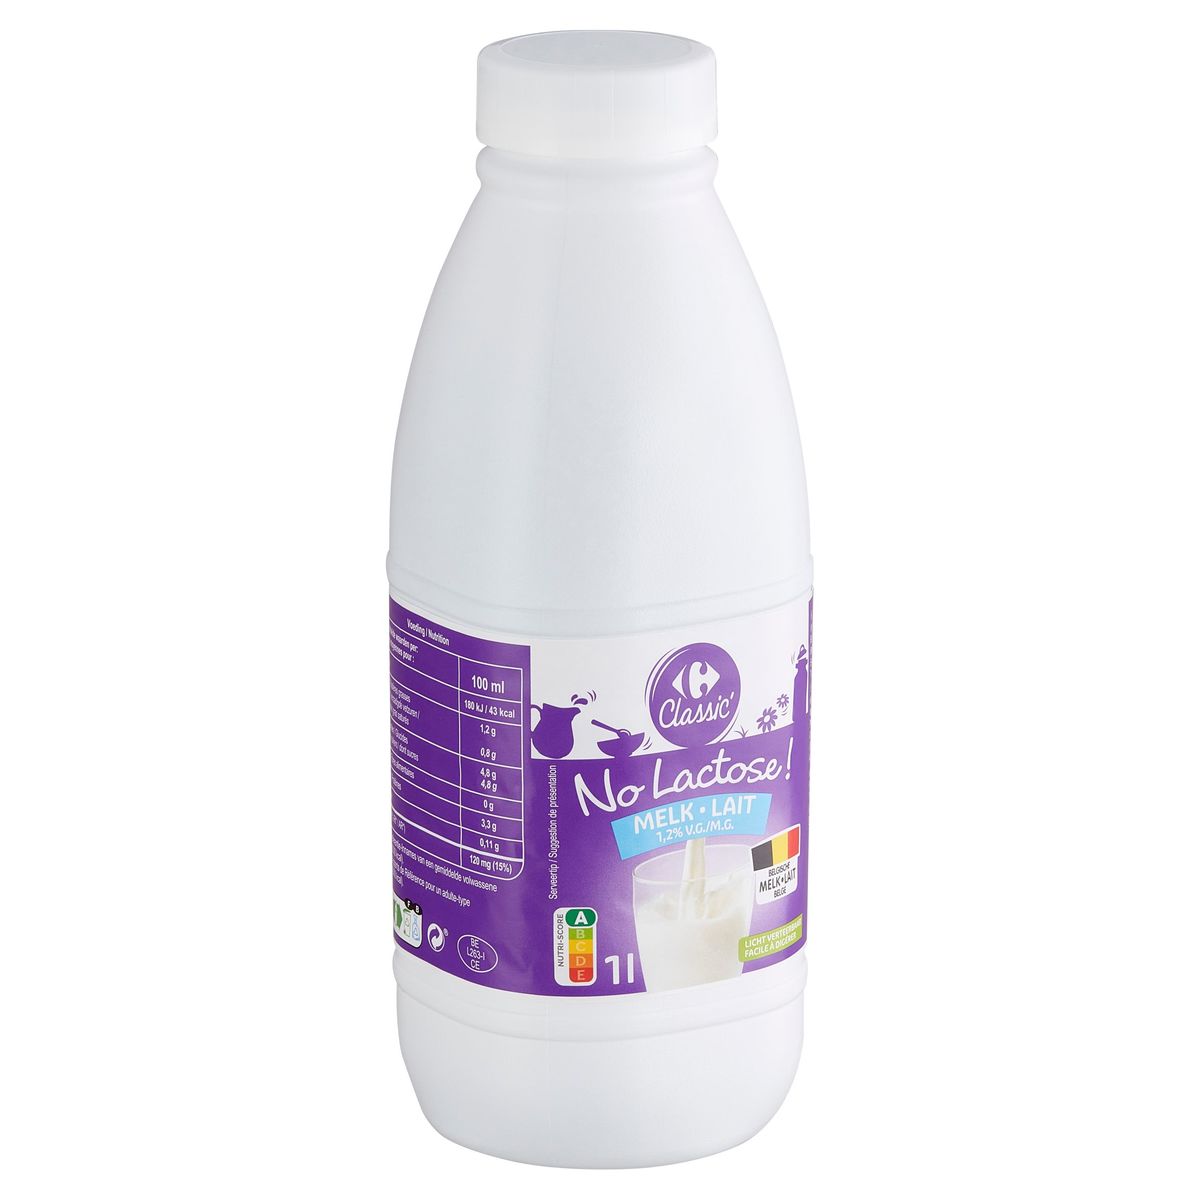 Carrefour Classic' No Lactose ! Lait 1.2% M.G. 1 l